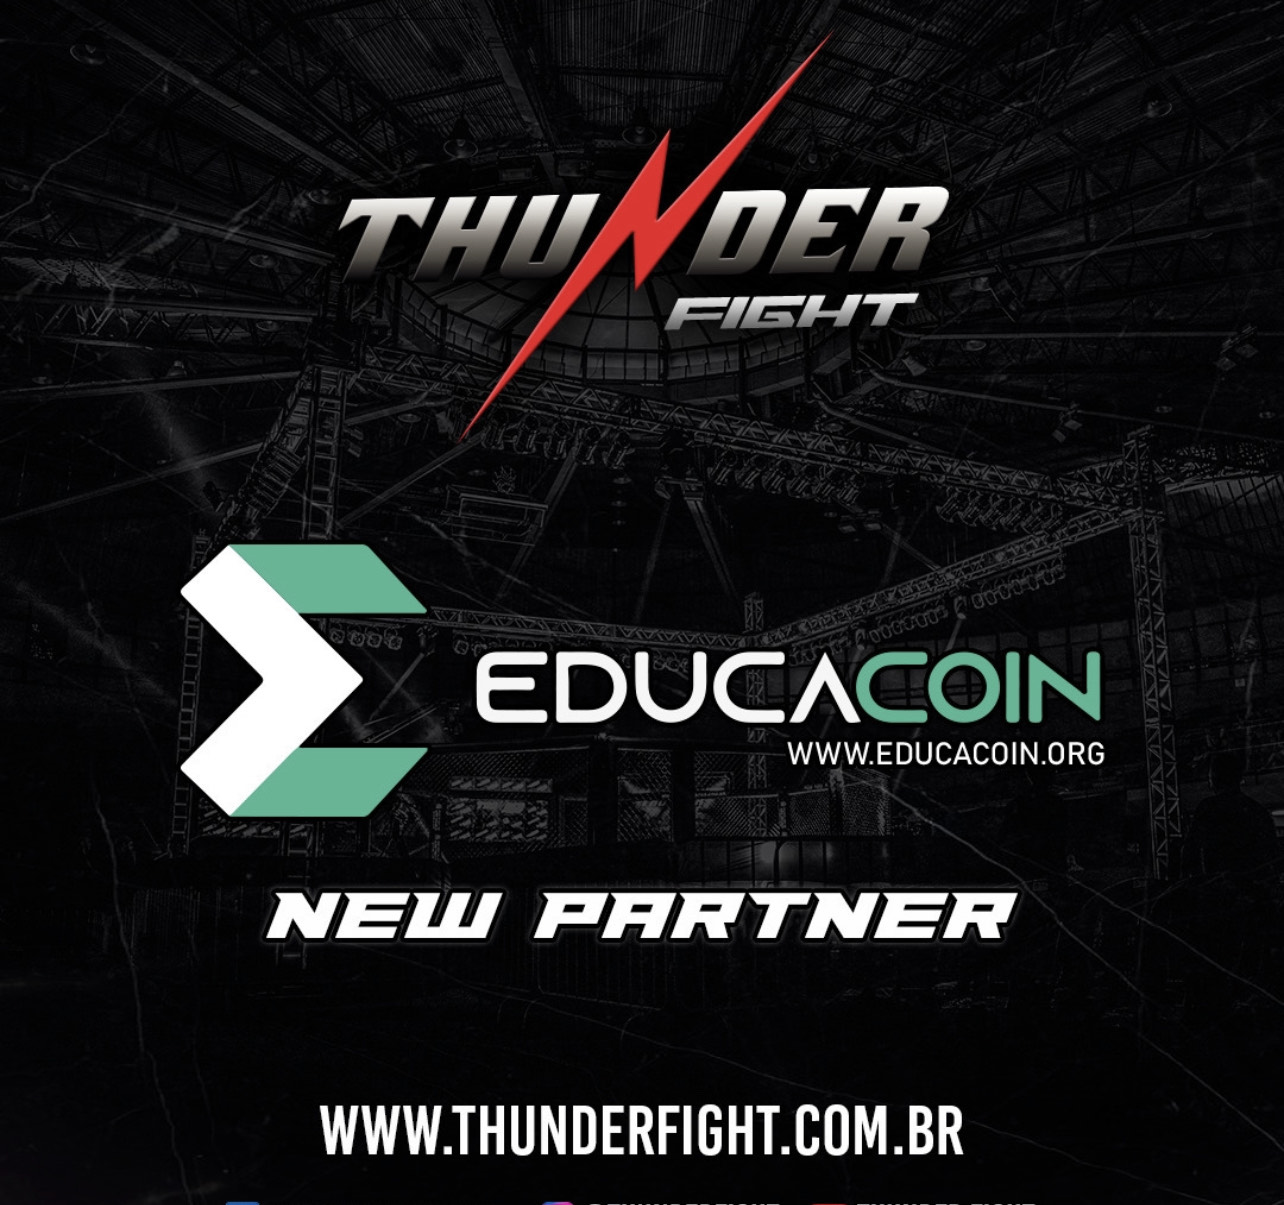 Evento de MMA Thunder Fight inova com apoio das Criptomoedas Educacoin.